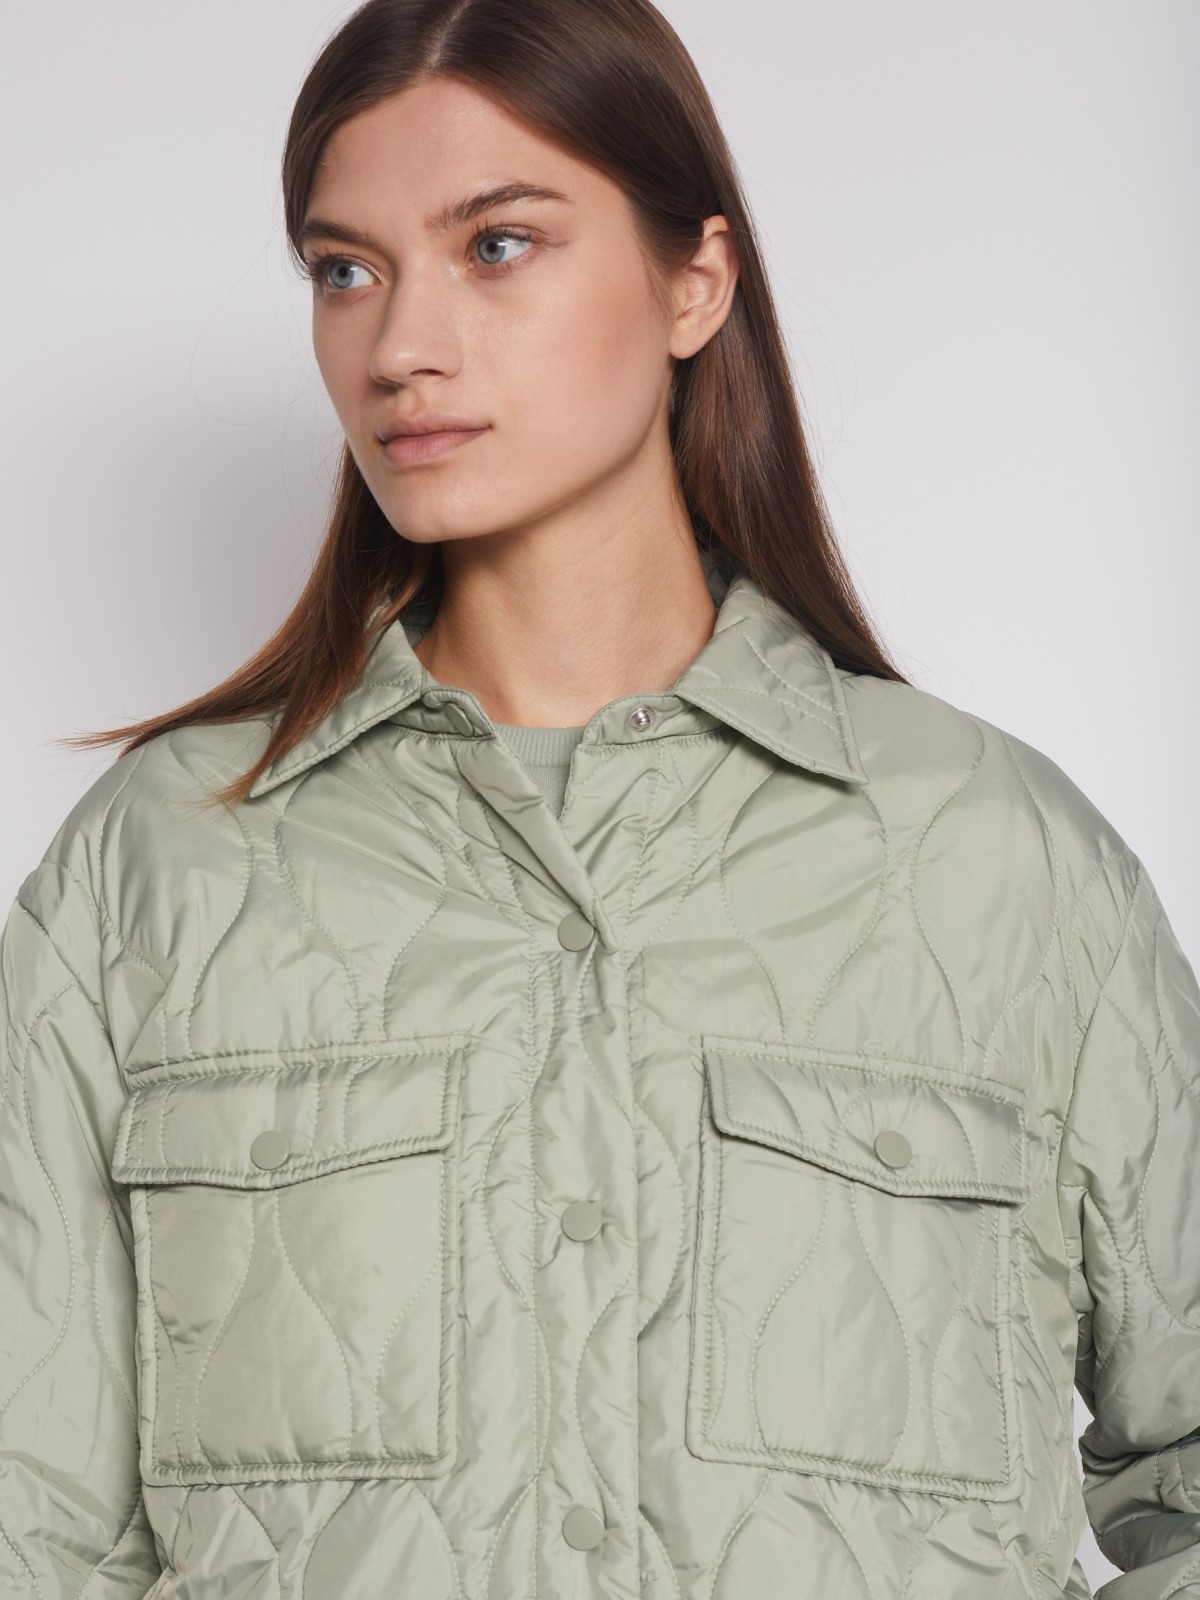 Стёганая куртка-рубашка с поясом zolla 022335102184, цвет мятный, размер XS - фото 4